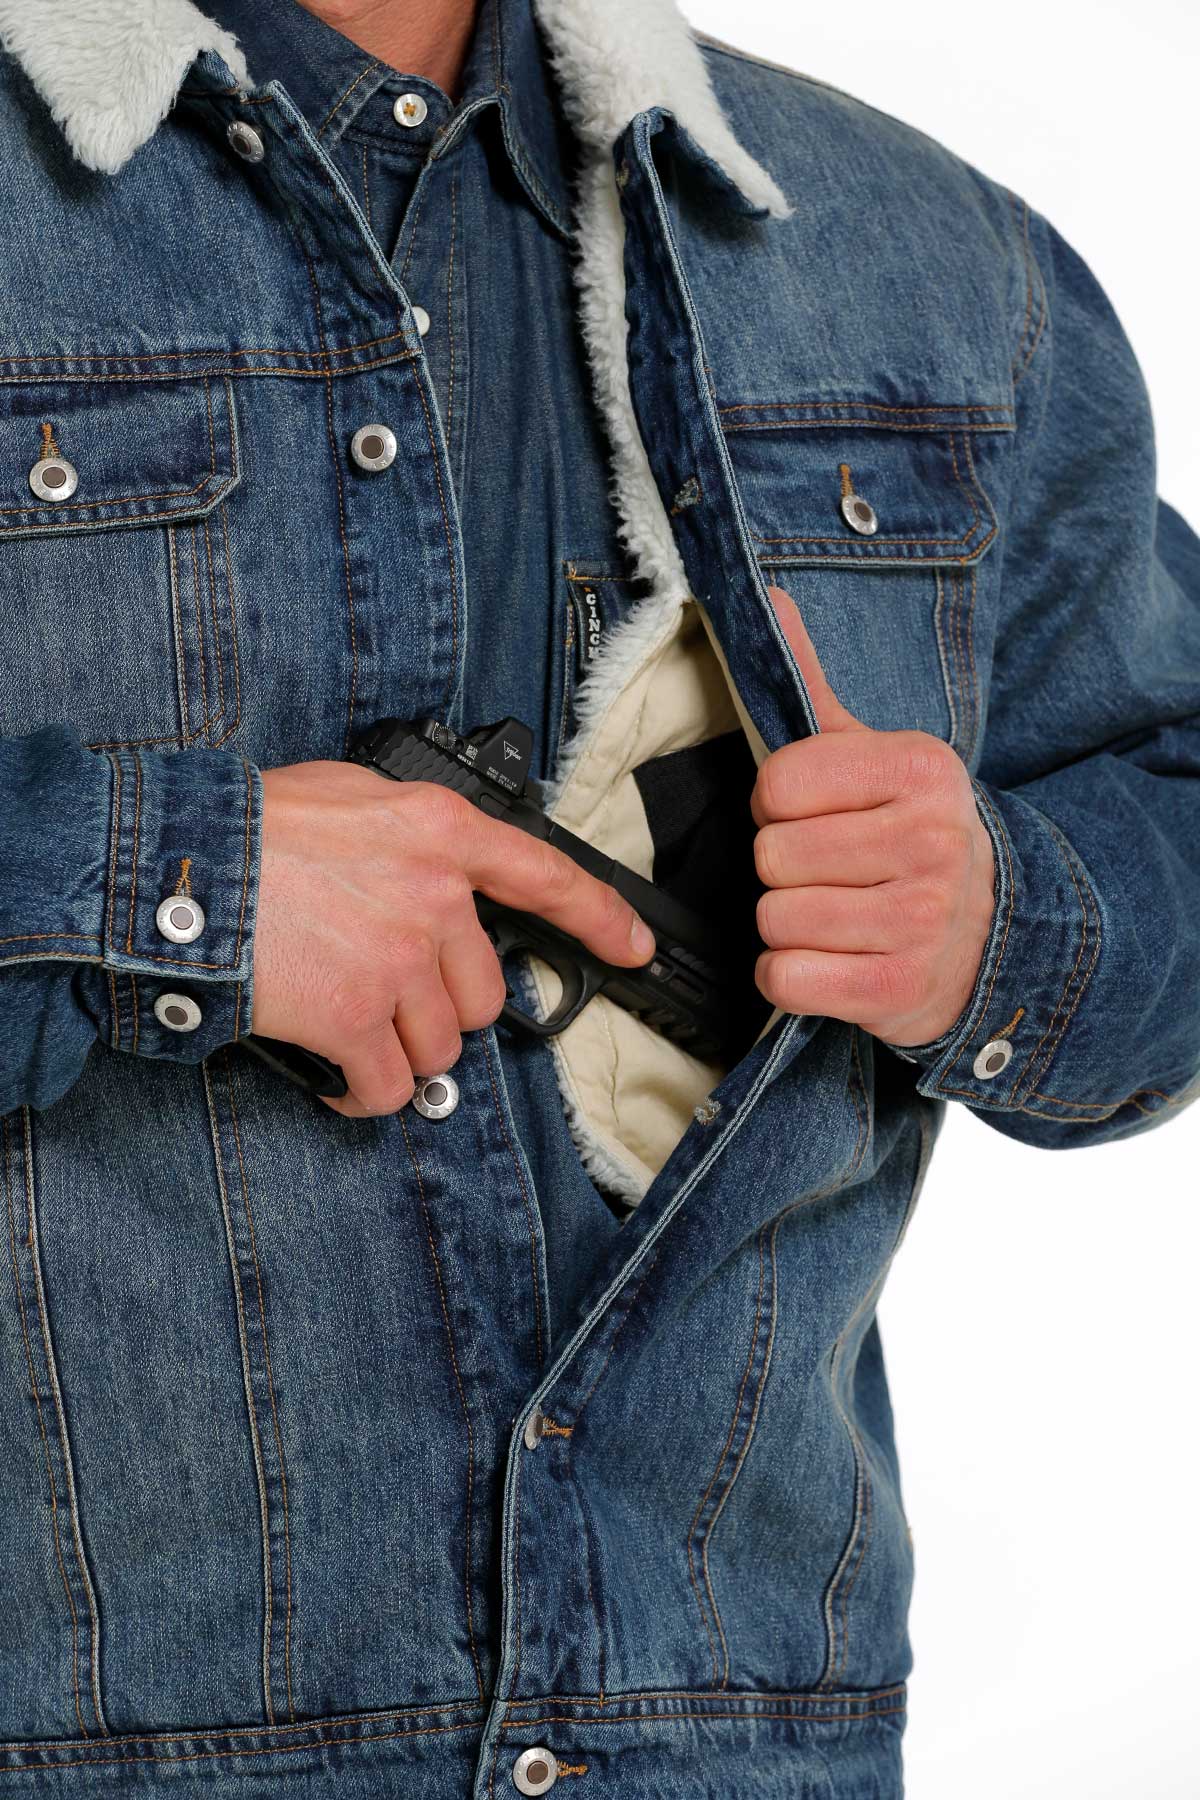 Vintage Wrangler jean/denim jacket. flannel/wool lining. Corduroy collar. |  Vintage wrangler jeans, Vintage wrangler, Wrangler jeans